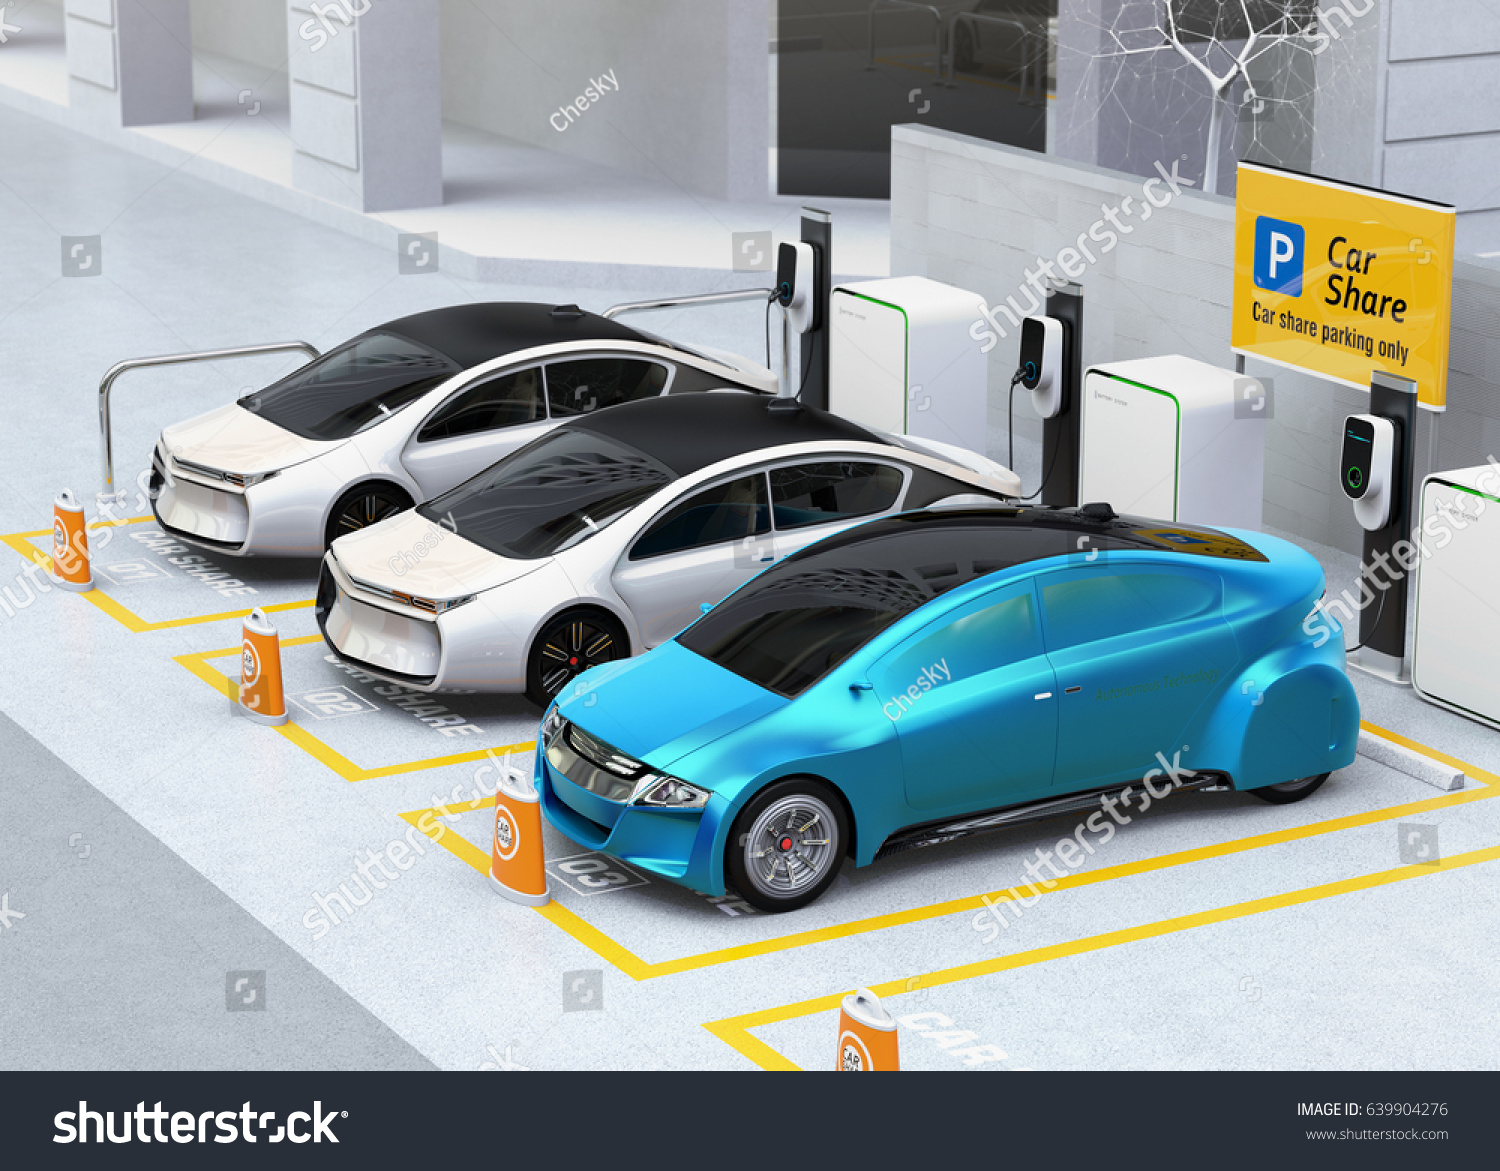 Autonomous Vehicles Parking Sharing Car